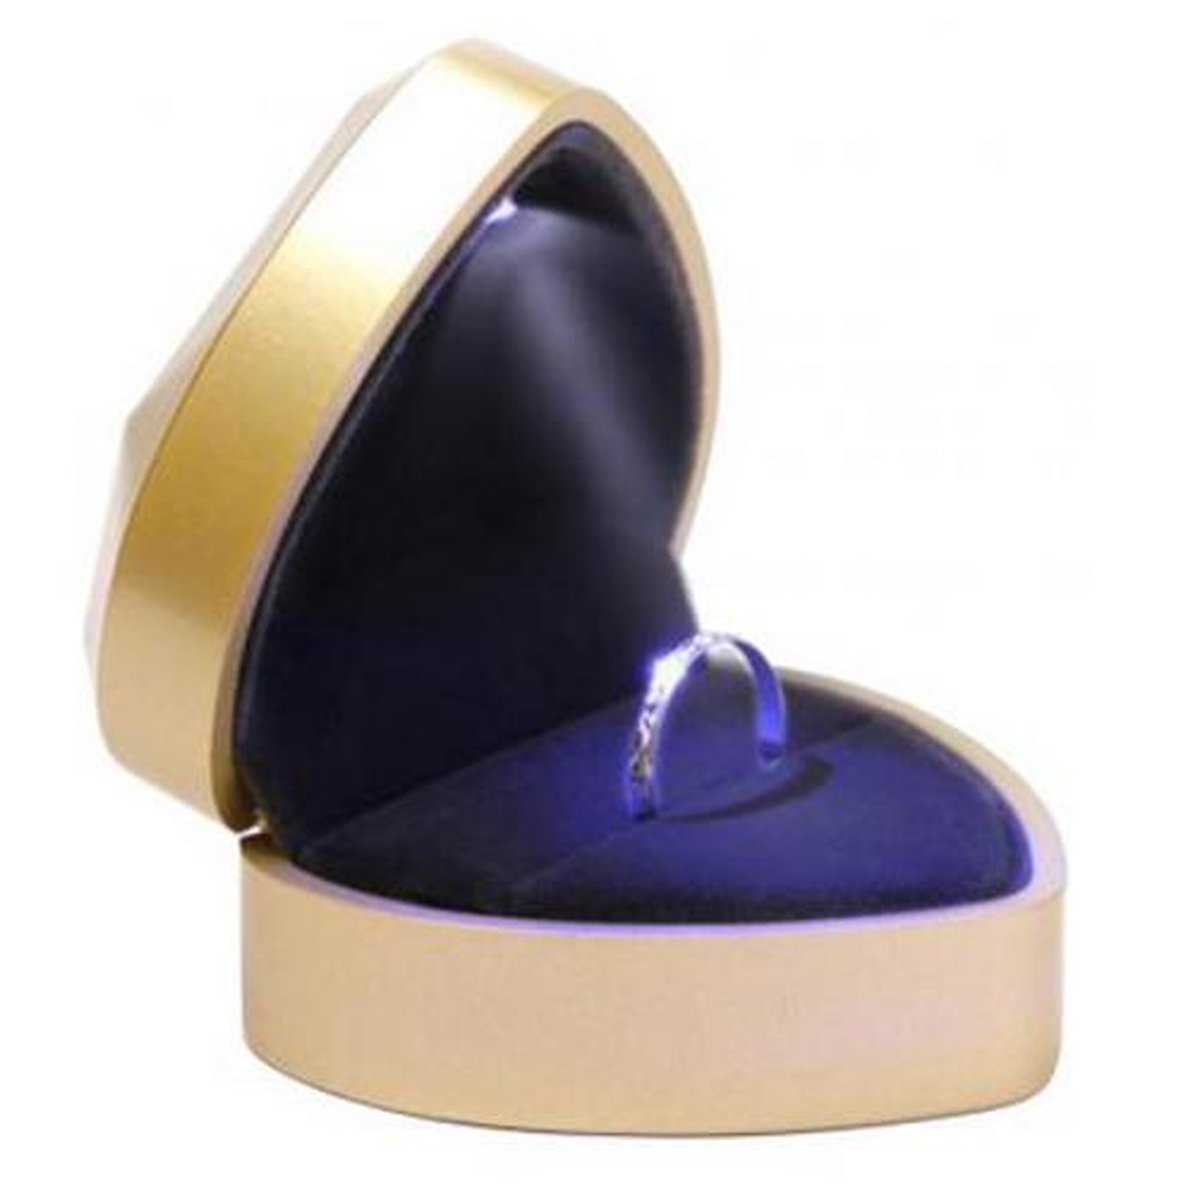 Ringdoosje hartje LED licht - liefde - goud - aanzoek - verloving - bruiloft - huwelijksaanzoek - sieradendoos - Valentijnsdag - ring - verlichting - lichtje - met licht - Merkloos